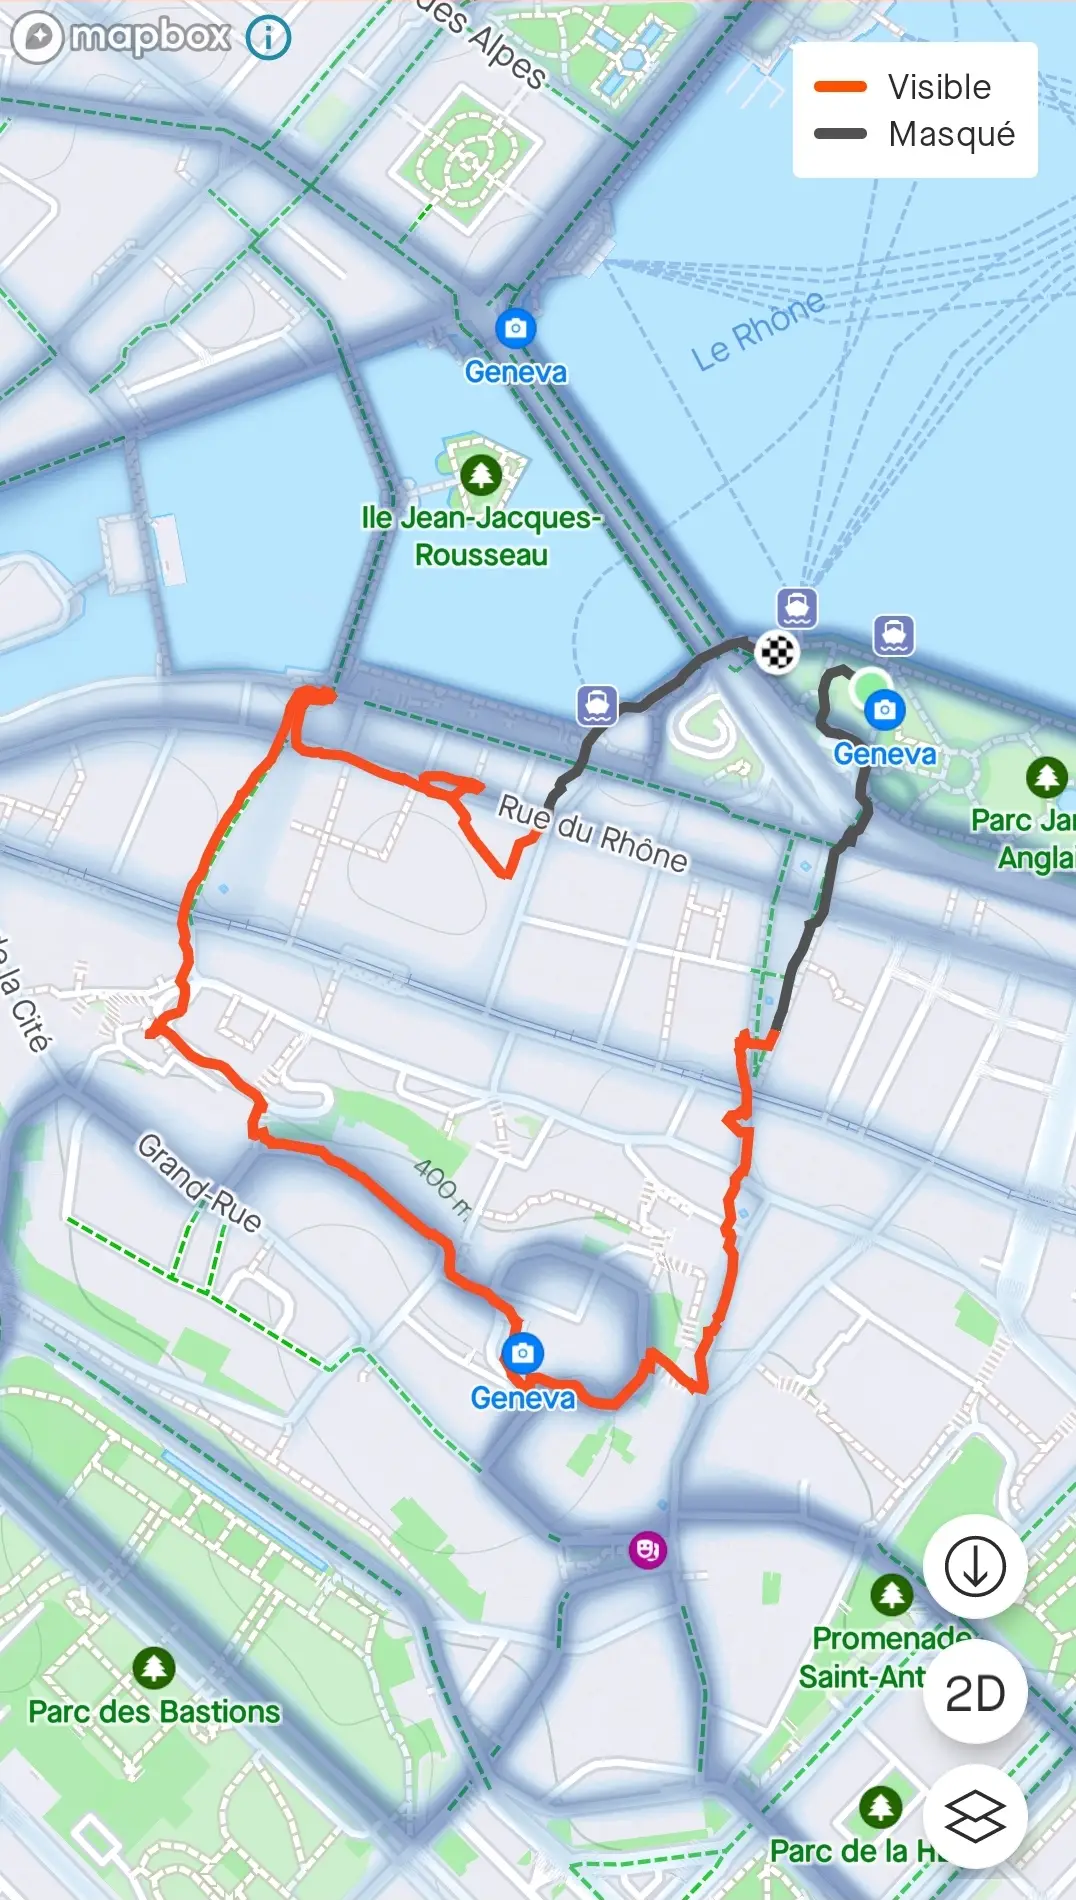 Geneva heart shaped route